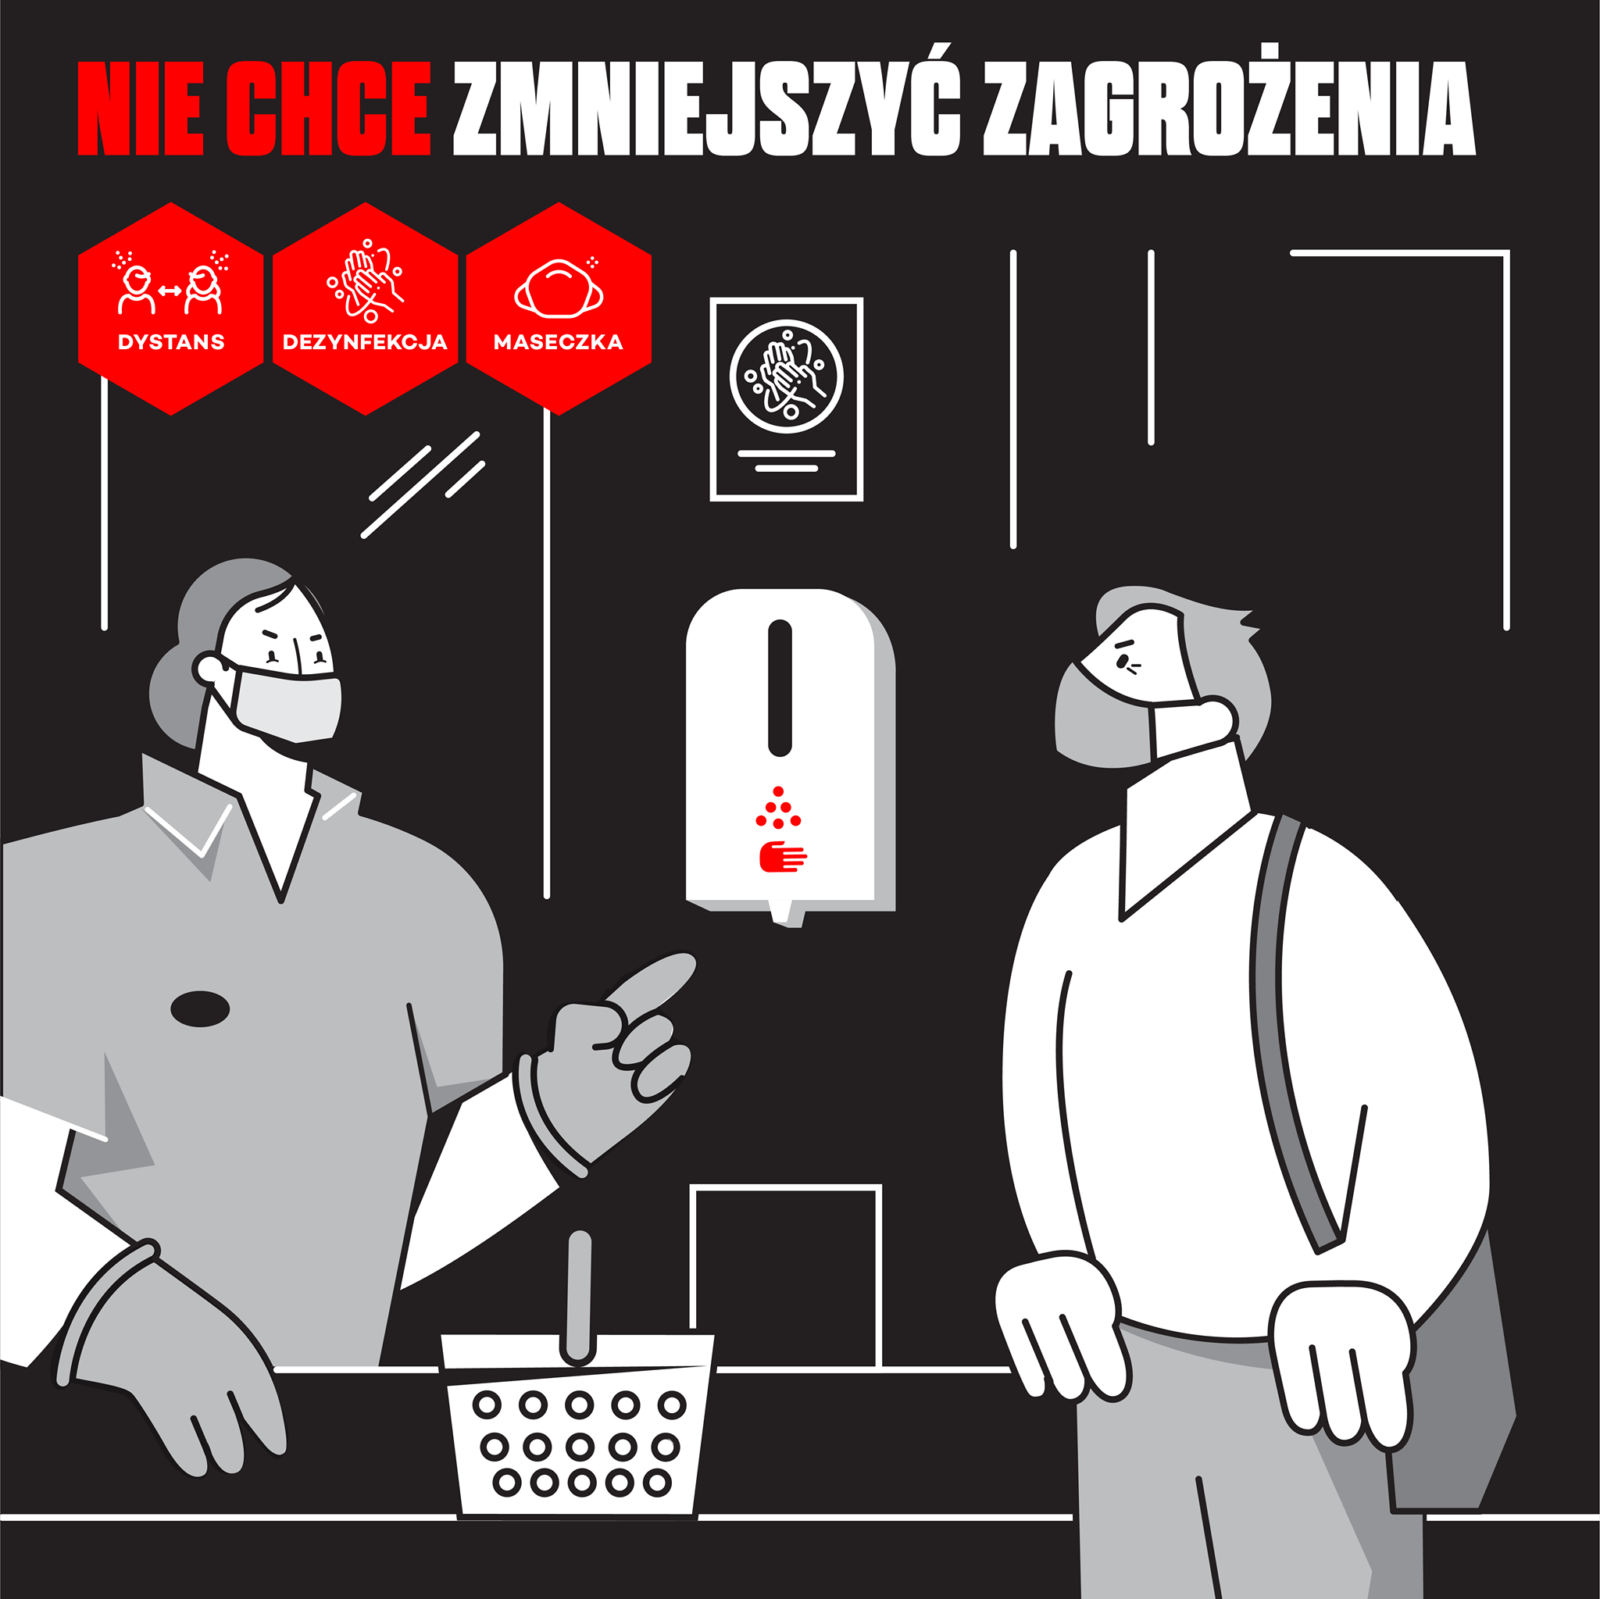 Plakat kampanii DDM Metropolia Poznań (Dystans Dezynfekcja Maseczka)